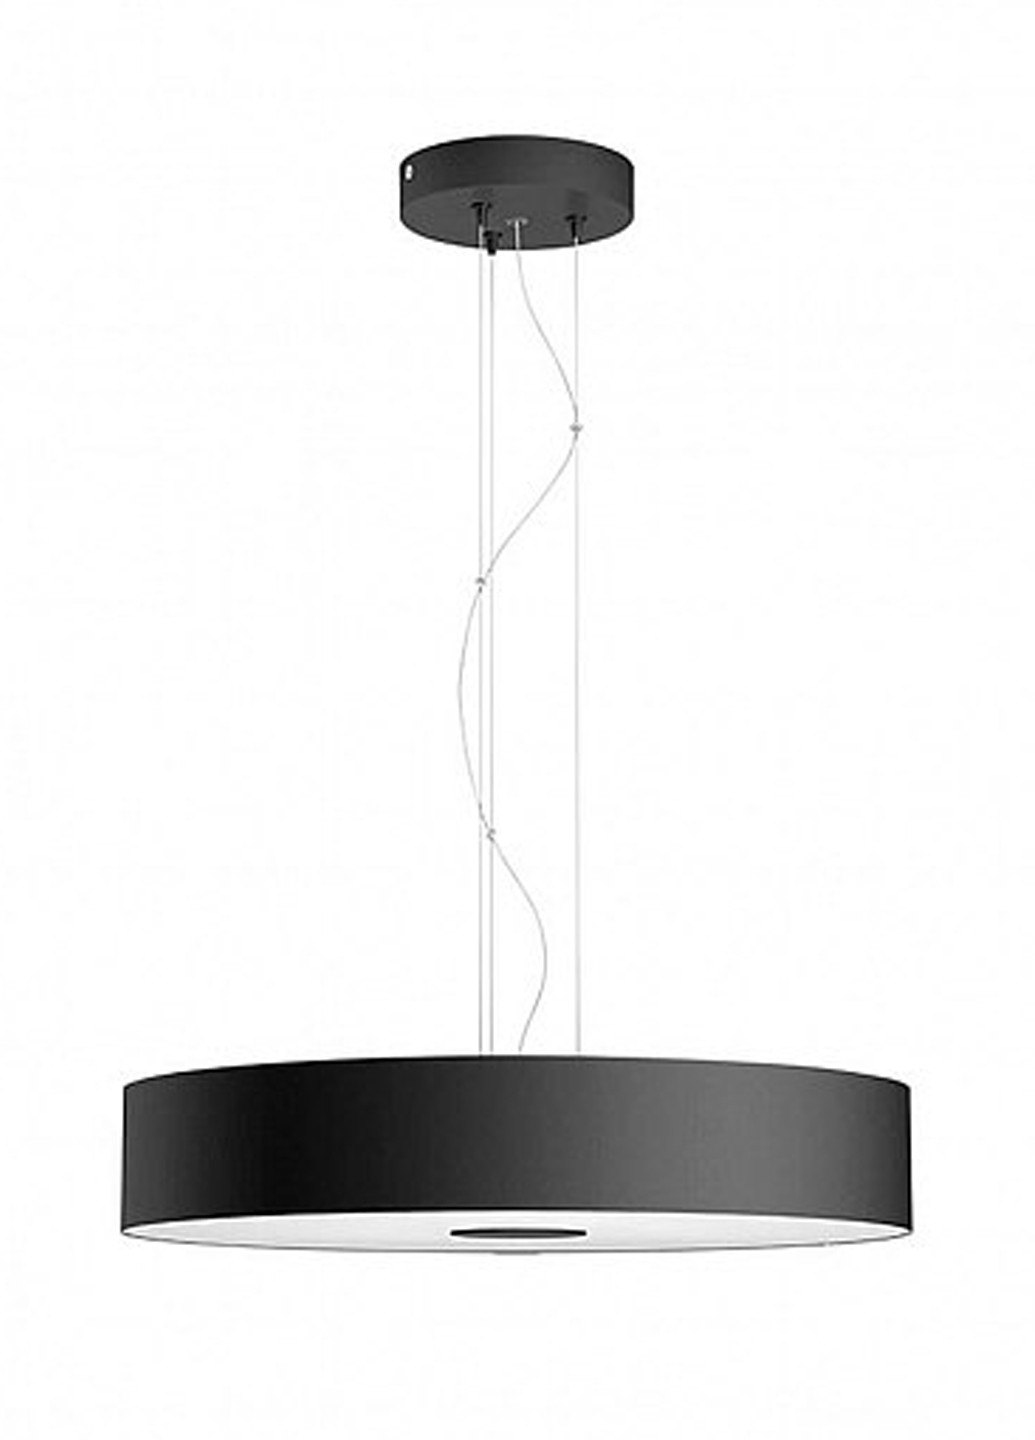 Смарт-светильник Fair Hue pendant black 1x39W (40339/30/P7) Philips смарт fair hue pendant black 1x39w (40339/30/p7) (142289775)